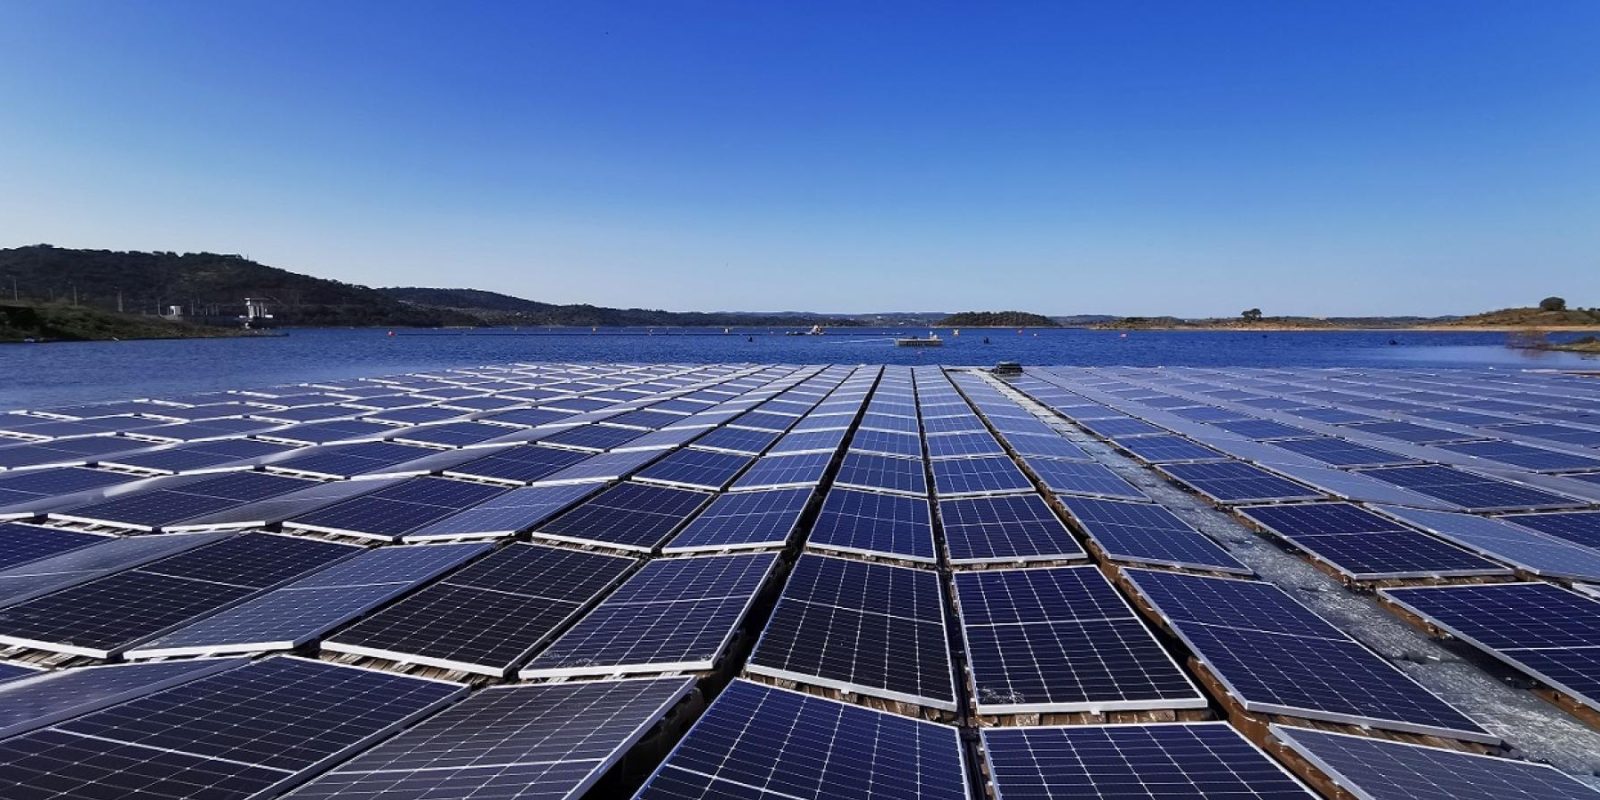 Europe's largest floating solar farm